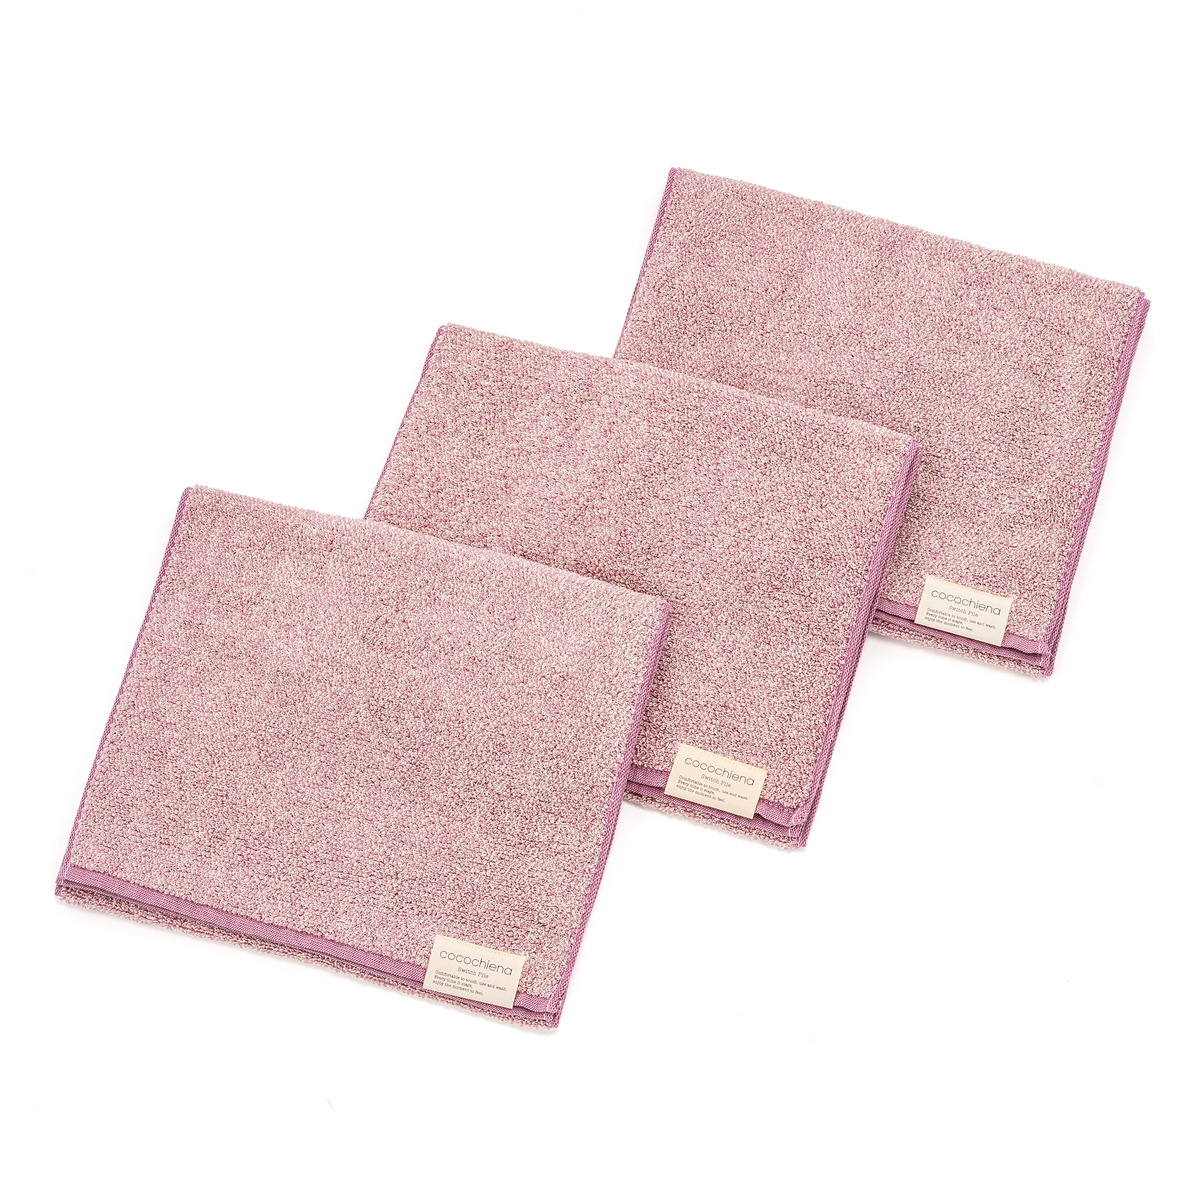  cocochiena洗うほどふくらむスリムバスタオル3枚  ピンク